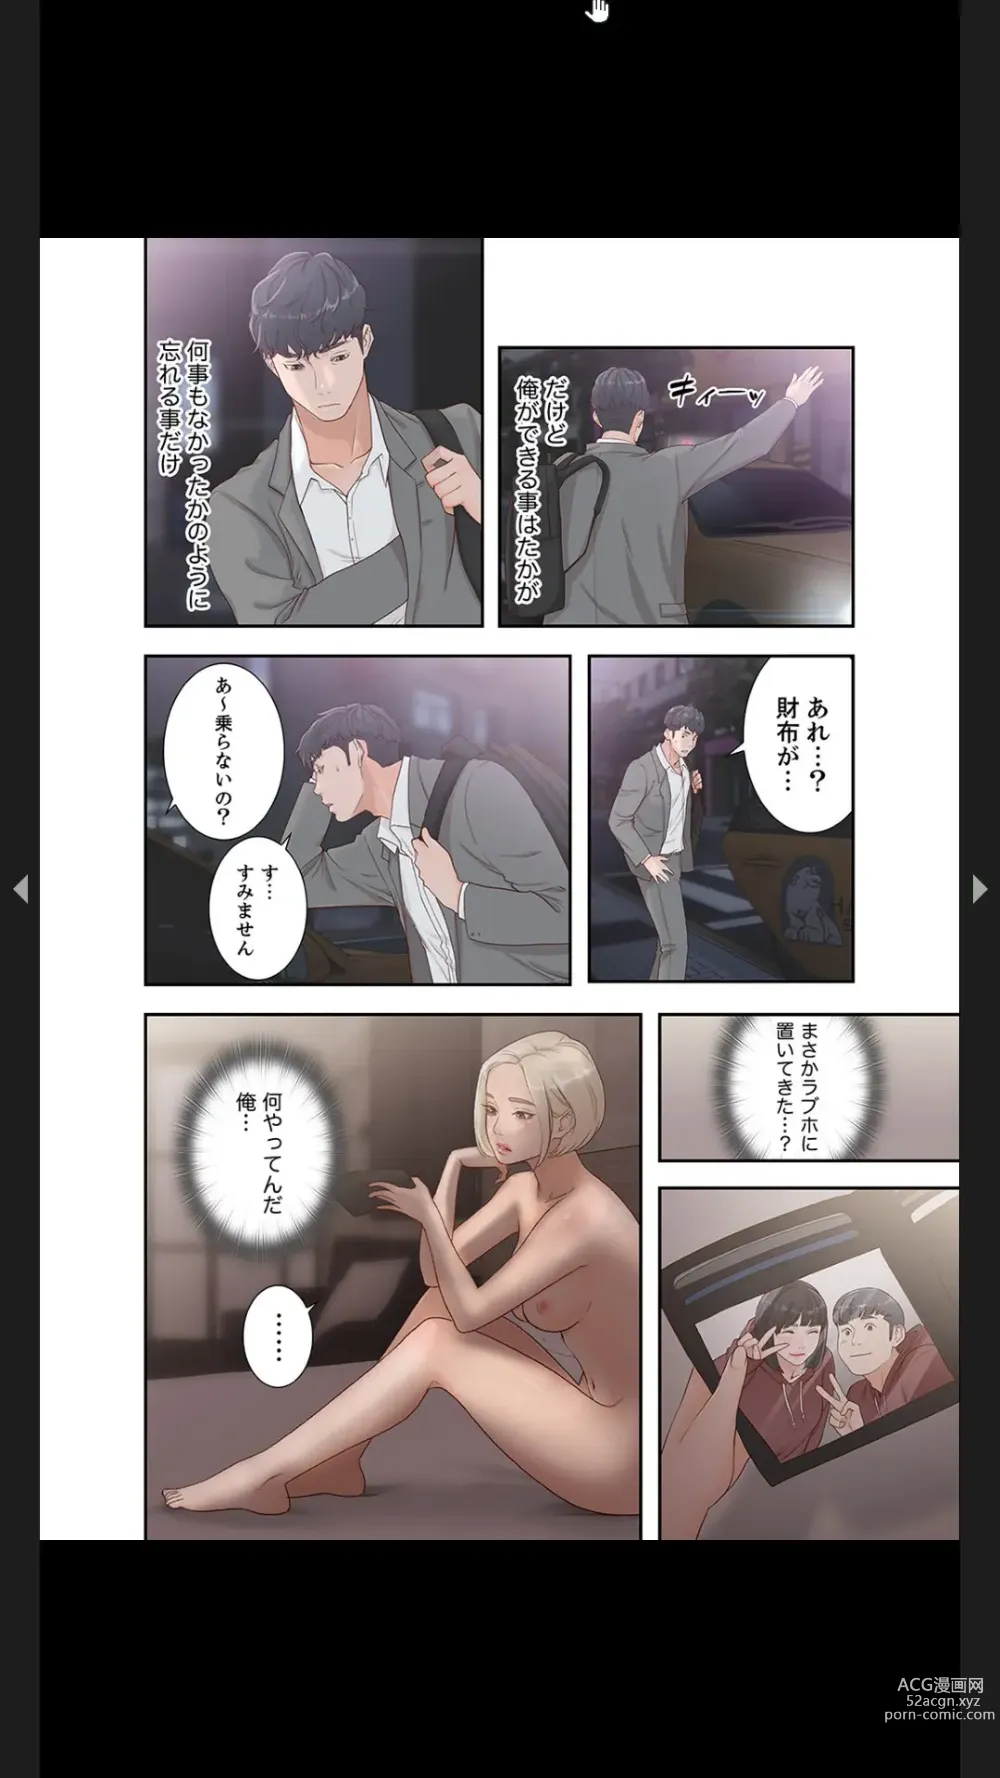 Page 111 of manga Moto Kano 1-2